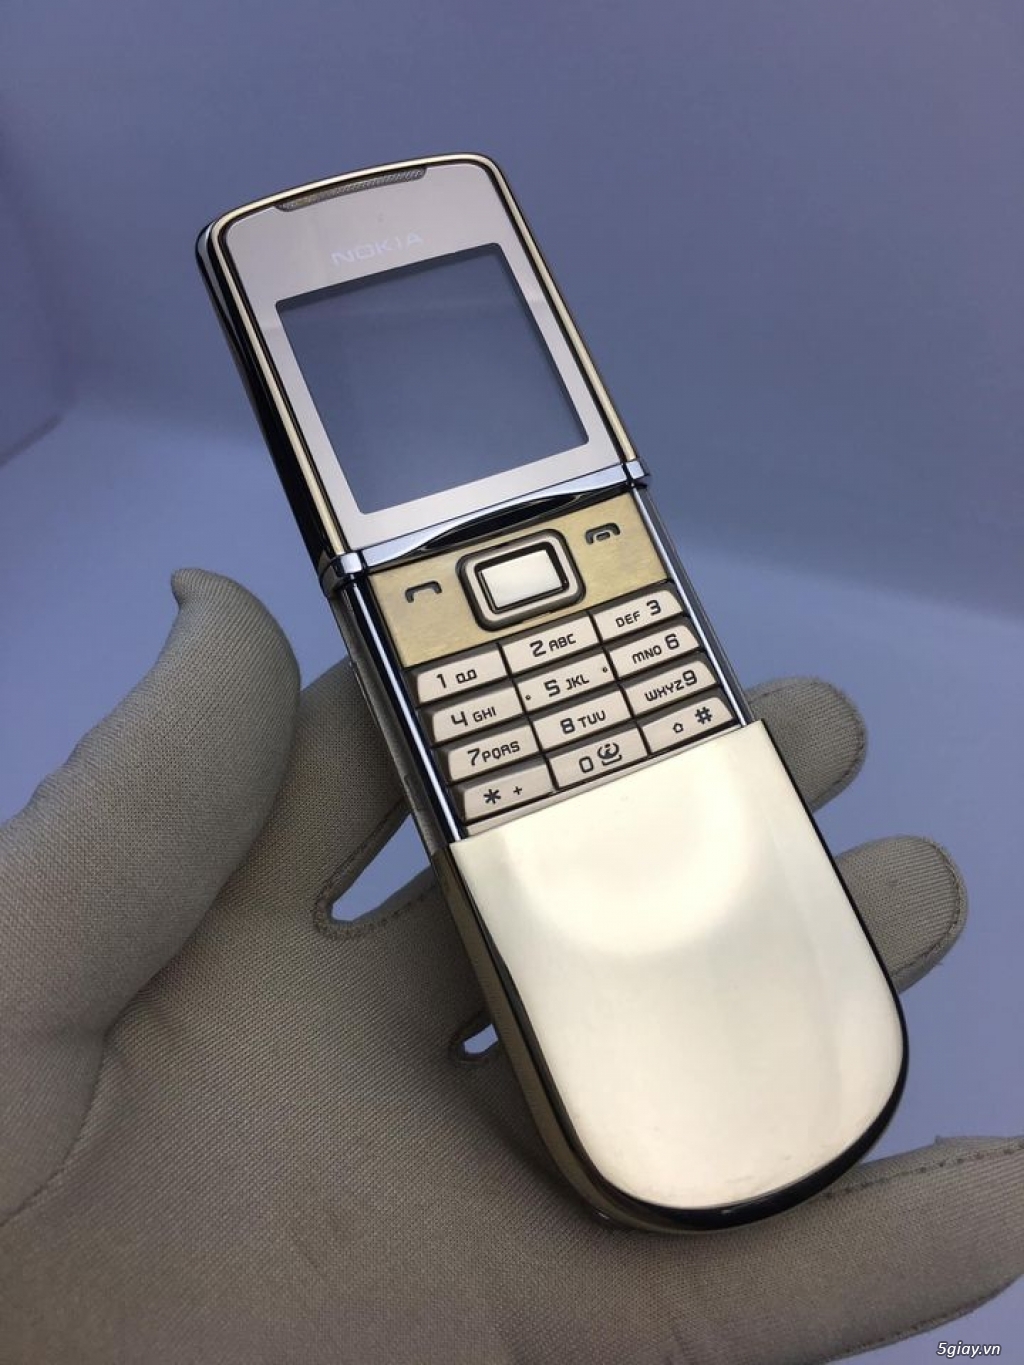 Nokia 8800 siroco Gold Chính Hãng